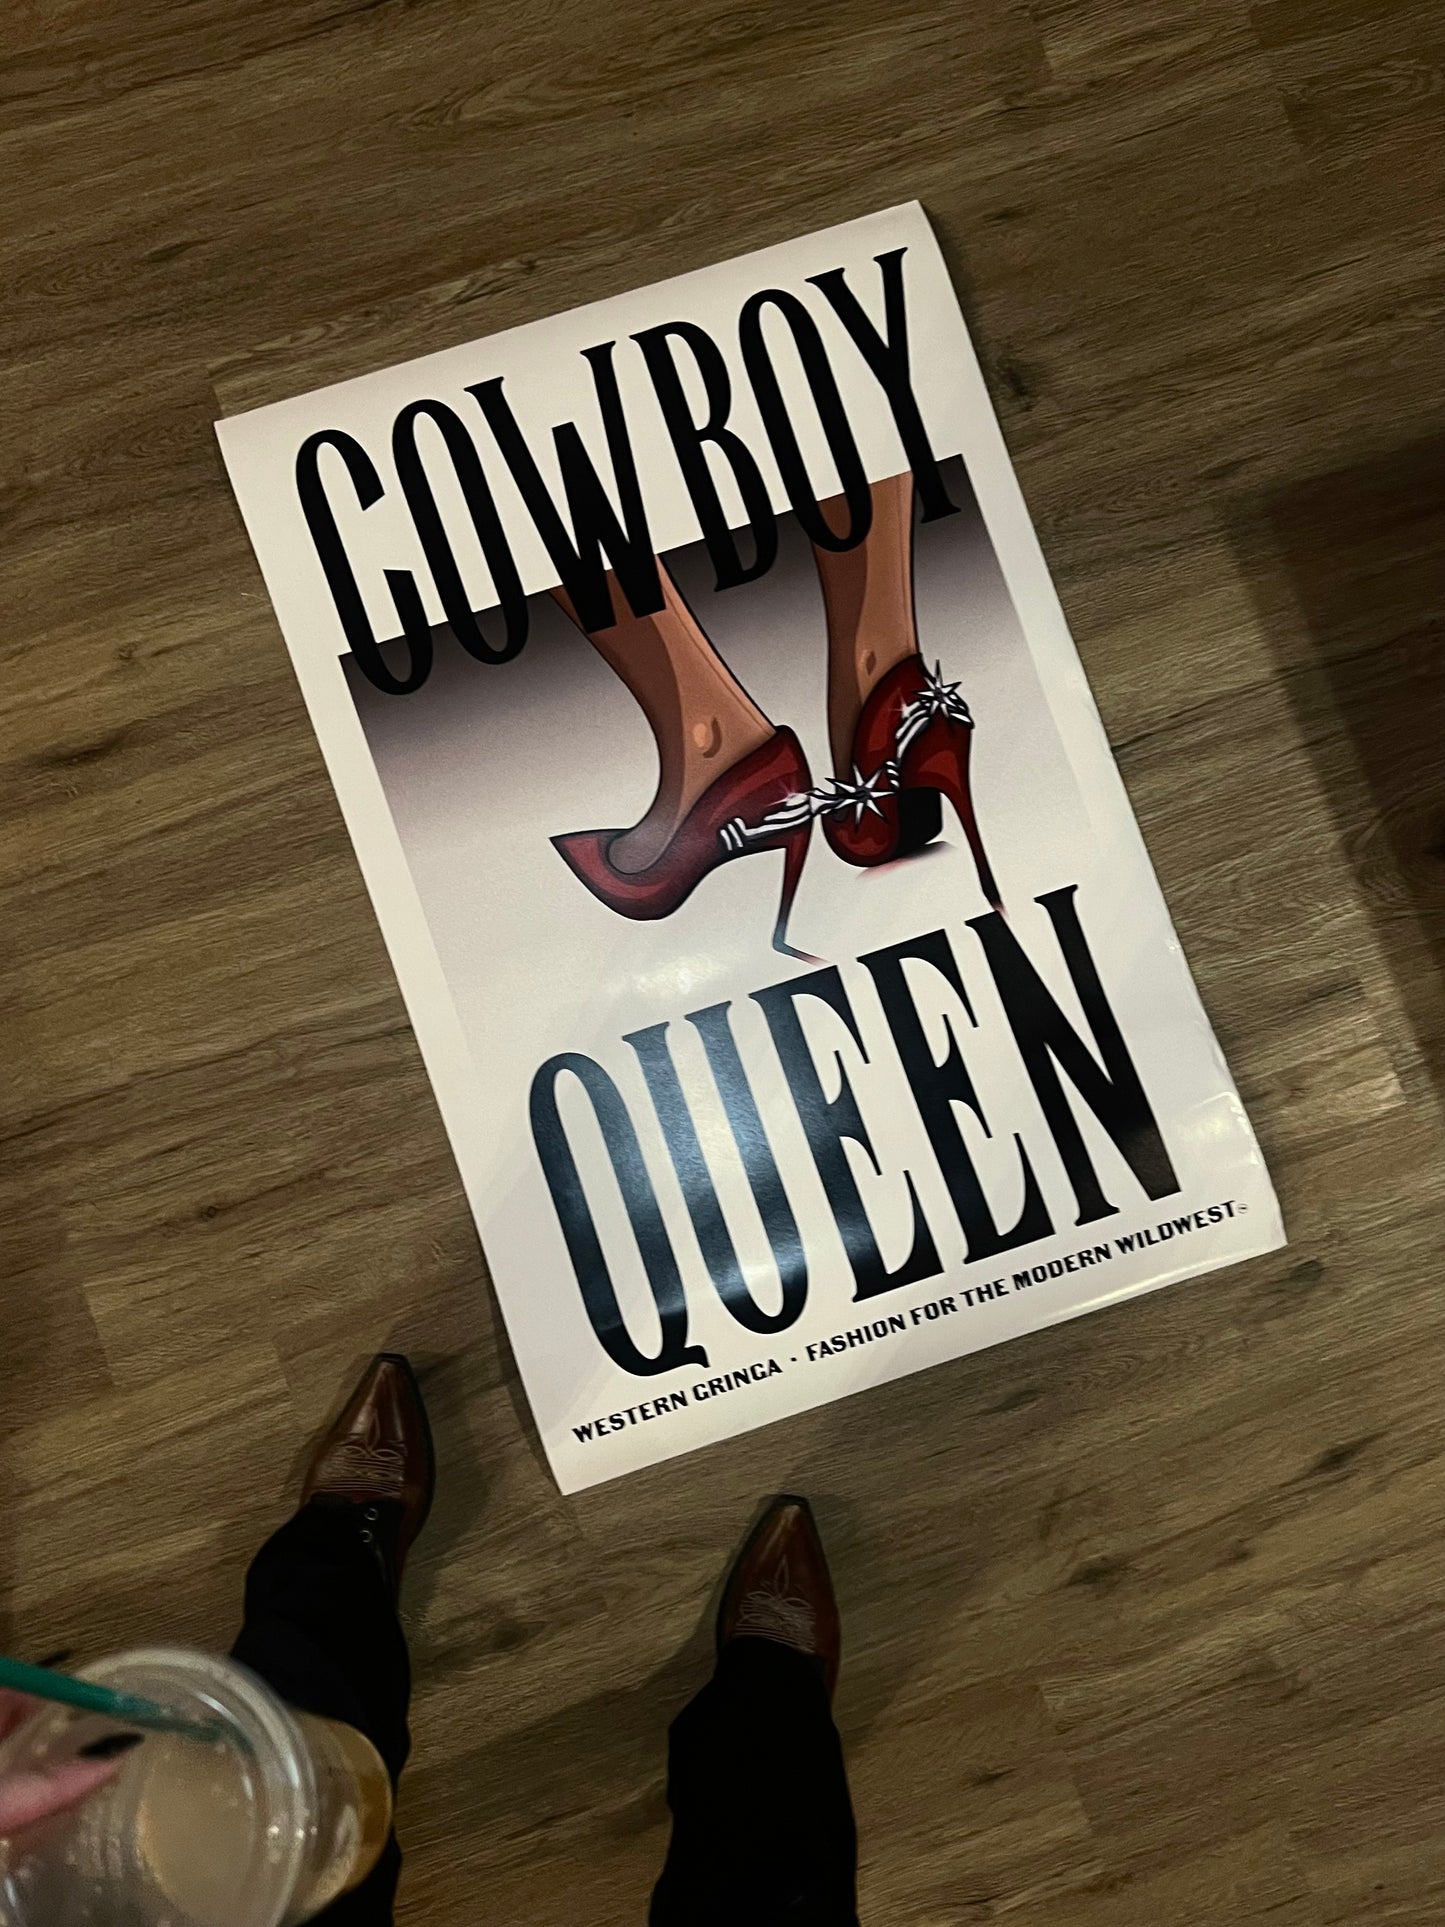 cowboy queen poster